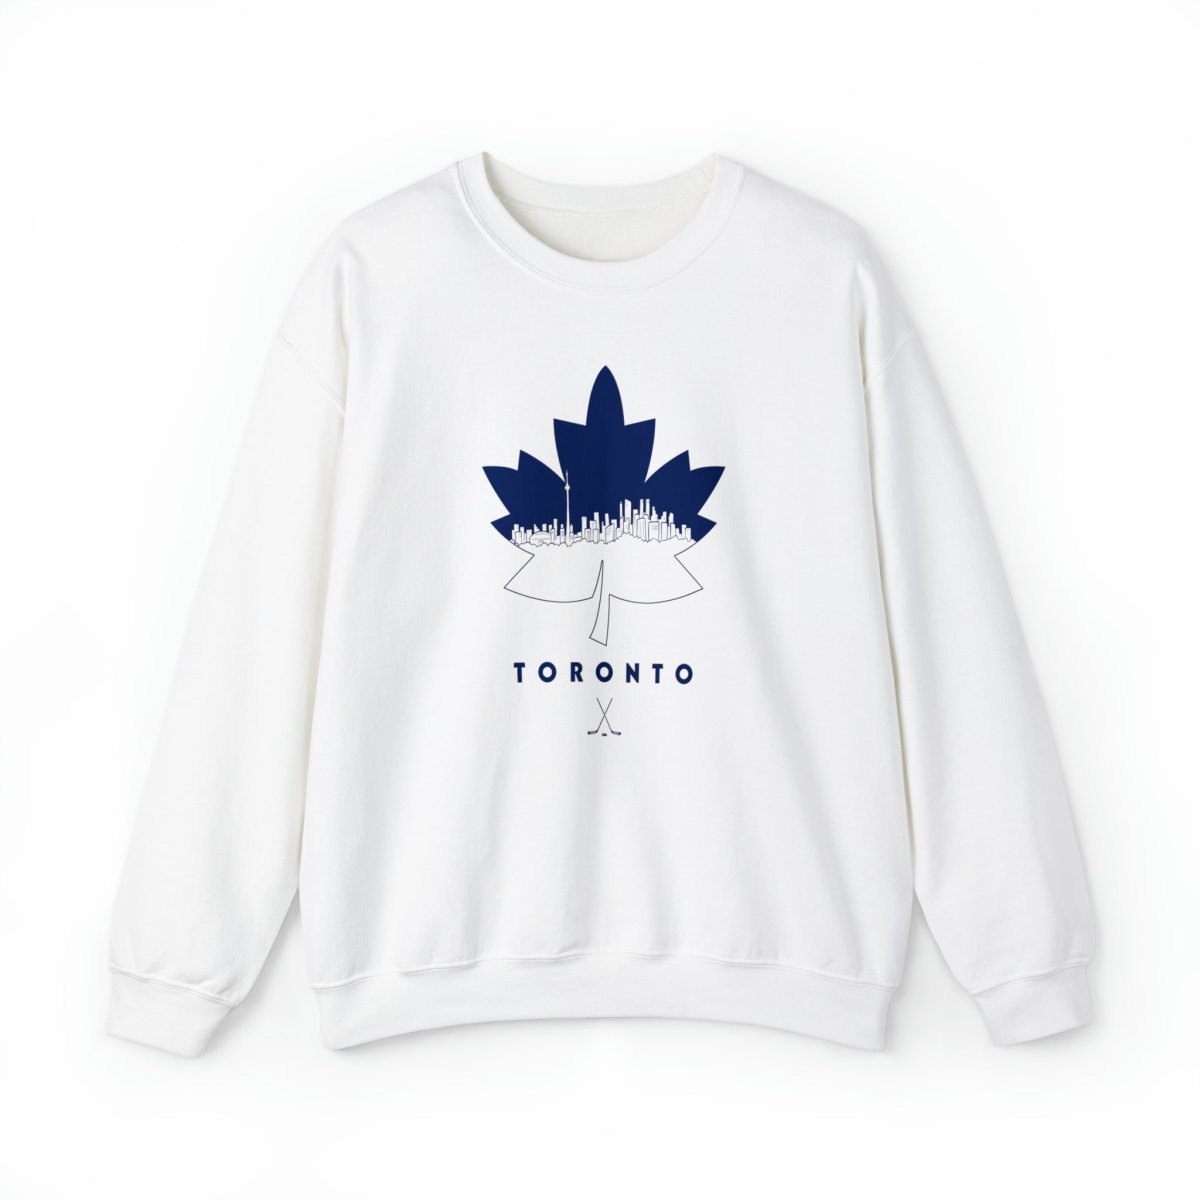 Toronto Skyline Crewneck Sweatshirt - Leveled Up Labels